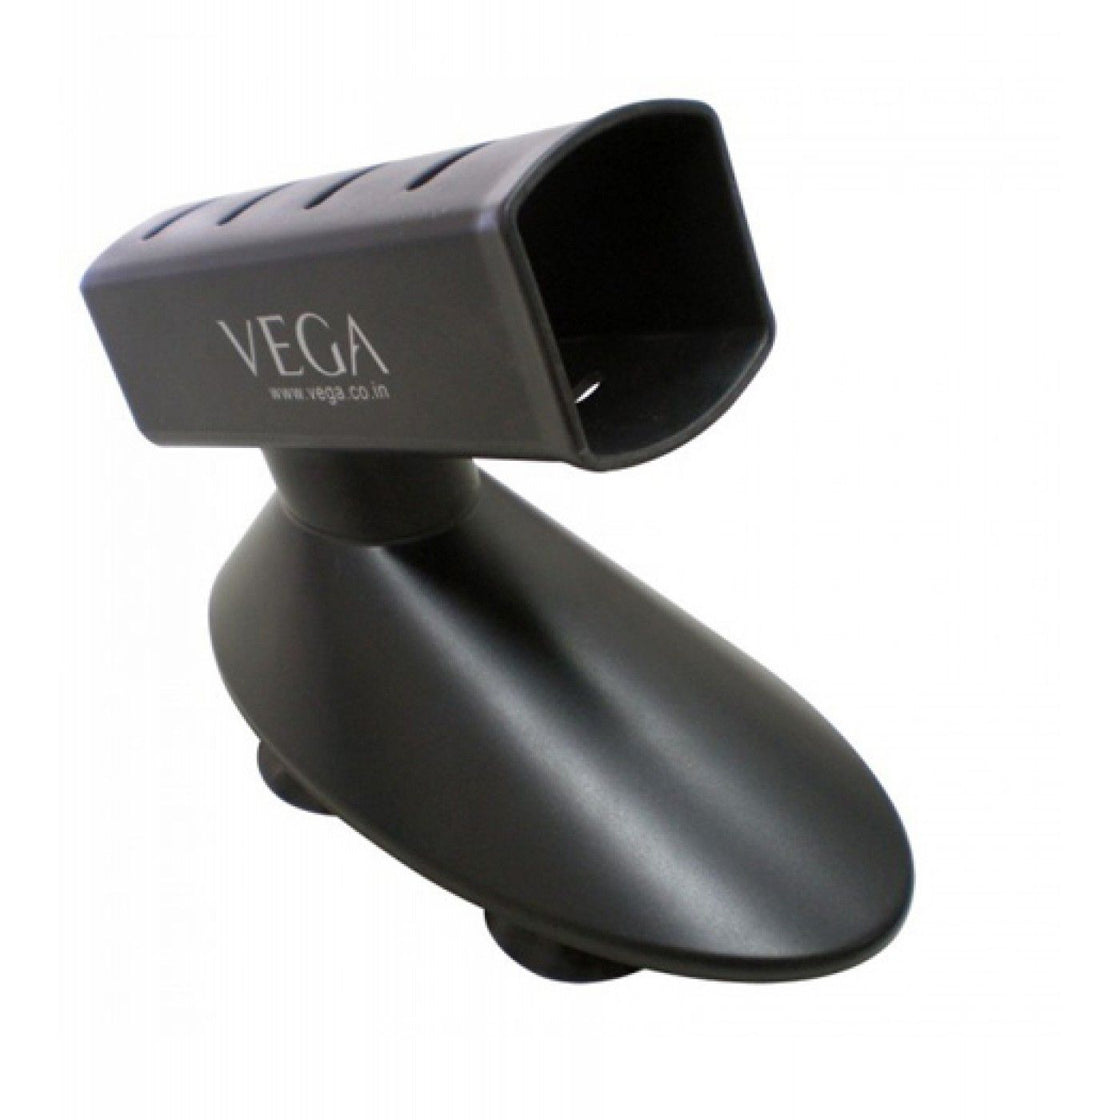 Vega Hair Straightener Holder (Vash-01)